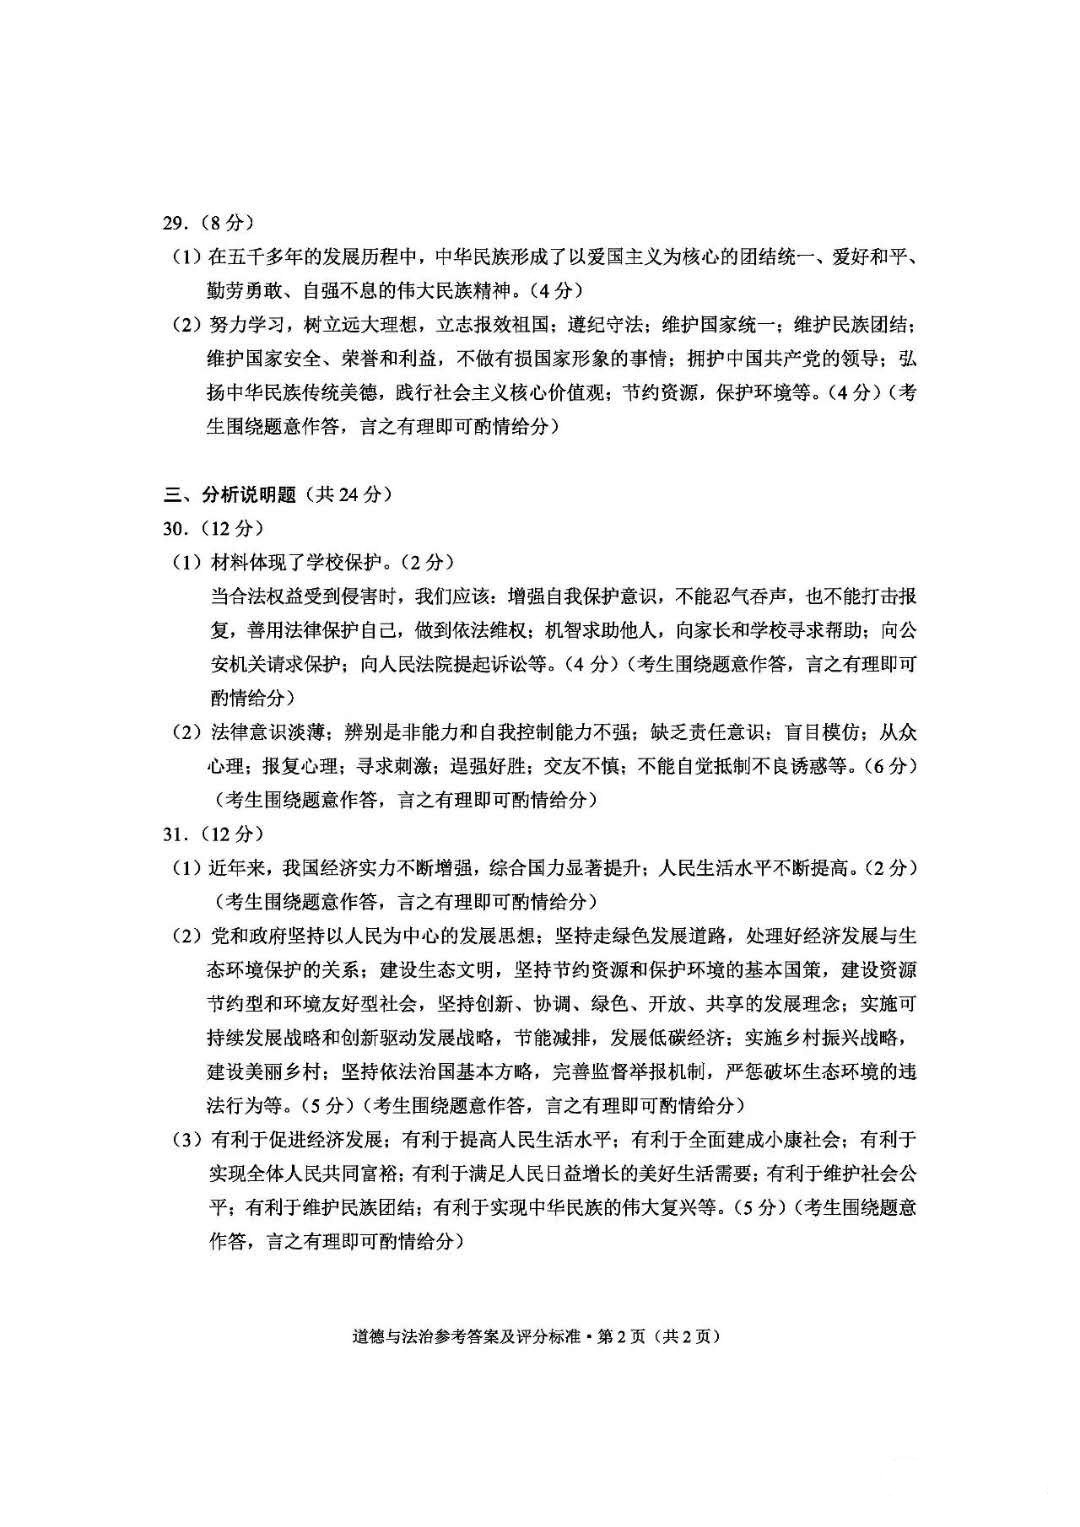 2019年云南中考《政治》真题及答案已公布